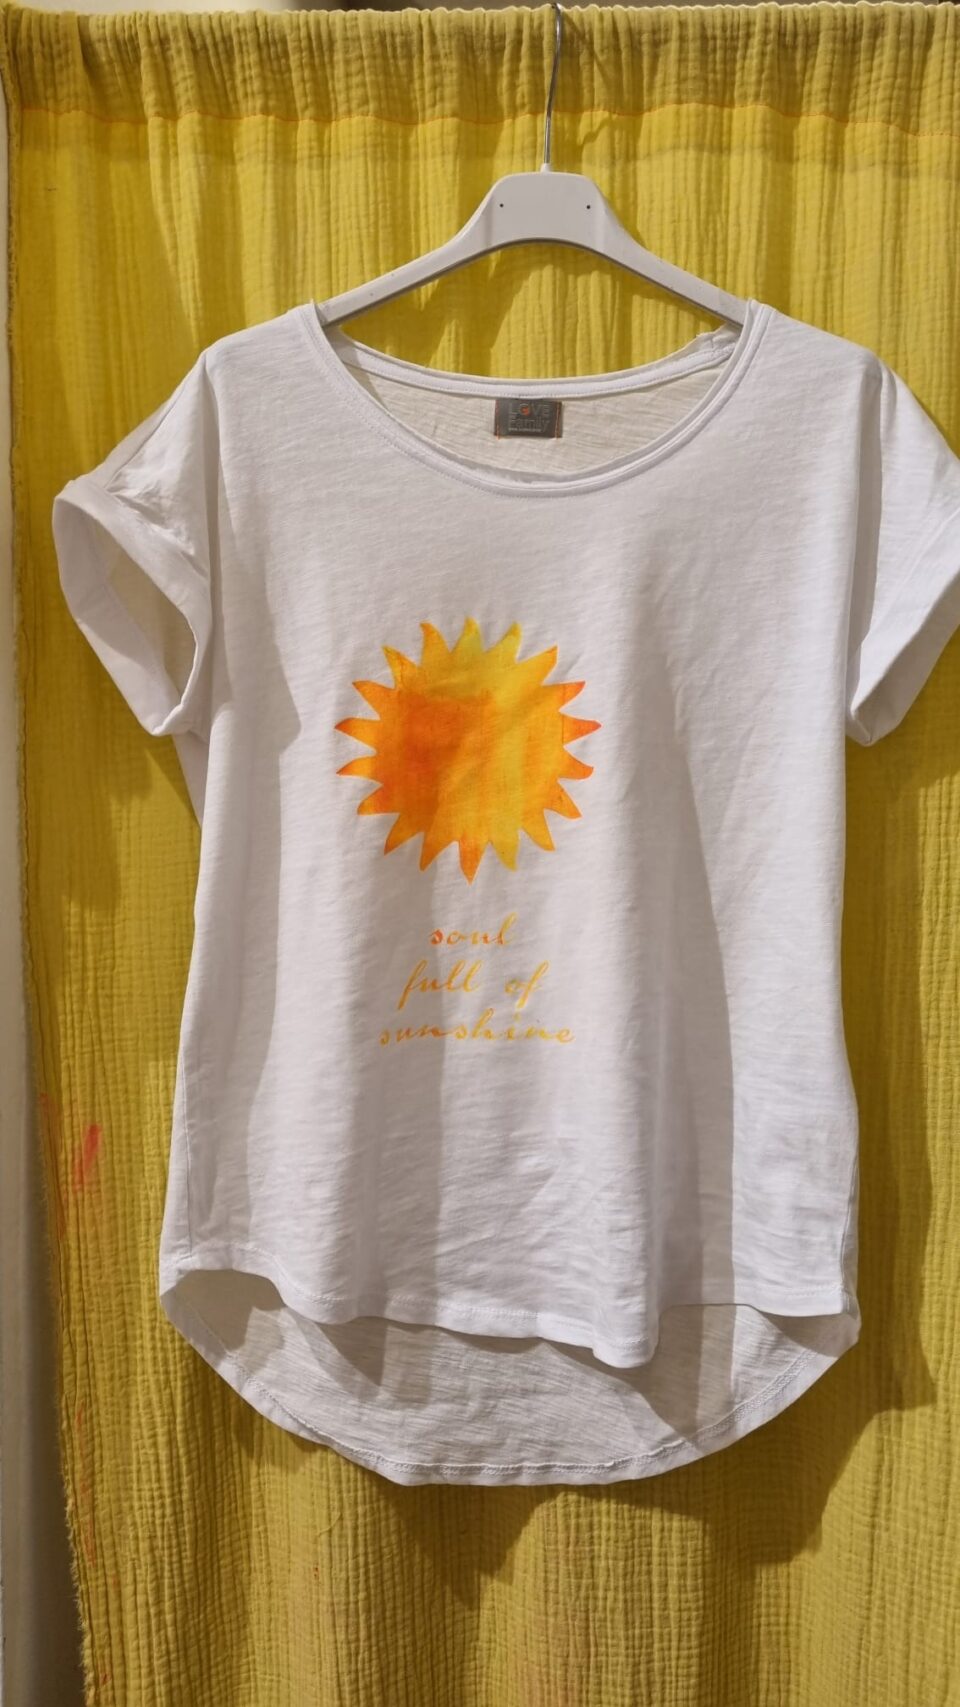 T-Shirt soul full of sunshine